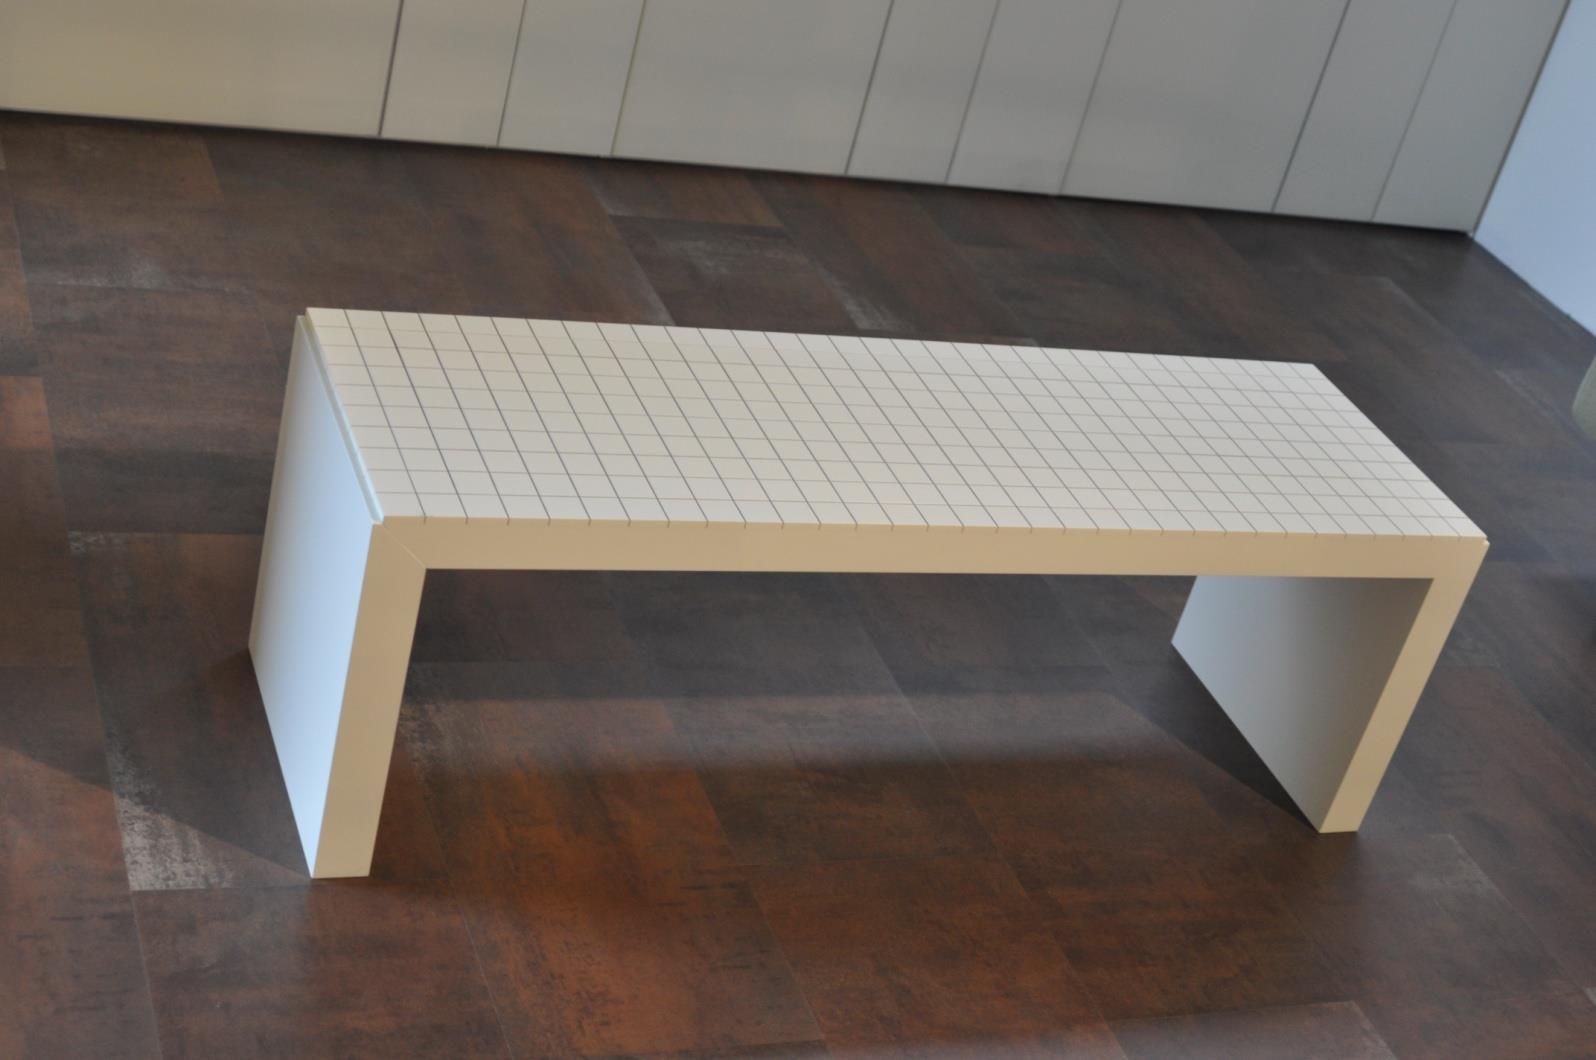 Lavice Softbench Lavice Softbench - komfortní lavice, která se vám přizpůsobí - rozměry: 40 x 130 cm ( šířka x délka ) - k